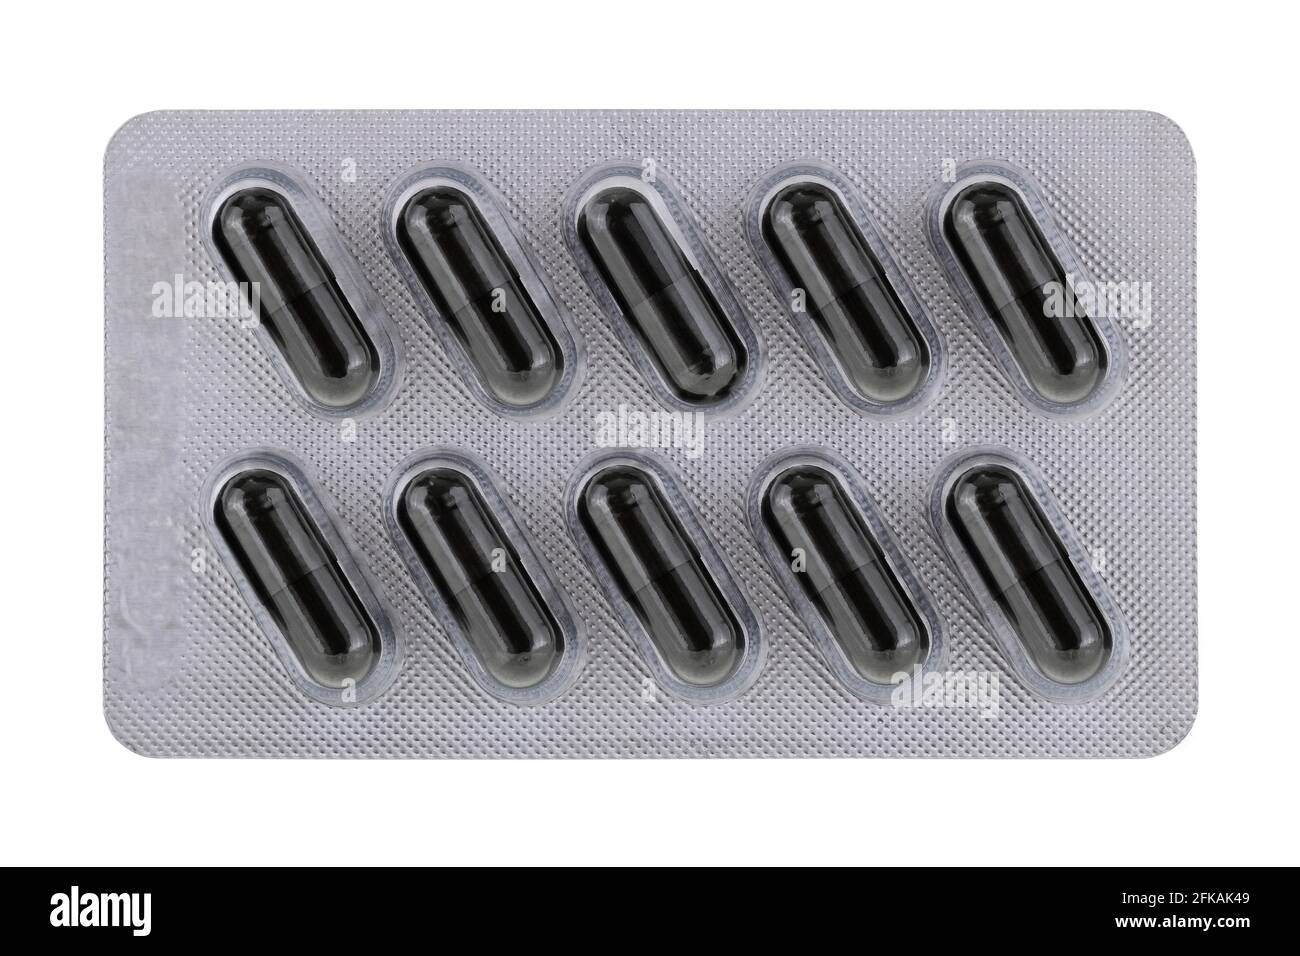 Un paquet plein de capsules noires avec charbon actif poudre (carbone) à l'intérieur, isolé sur blanc Banque D'Images